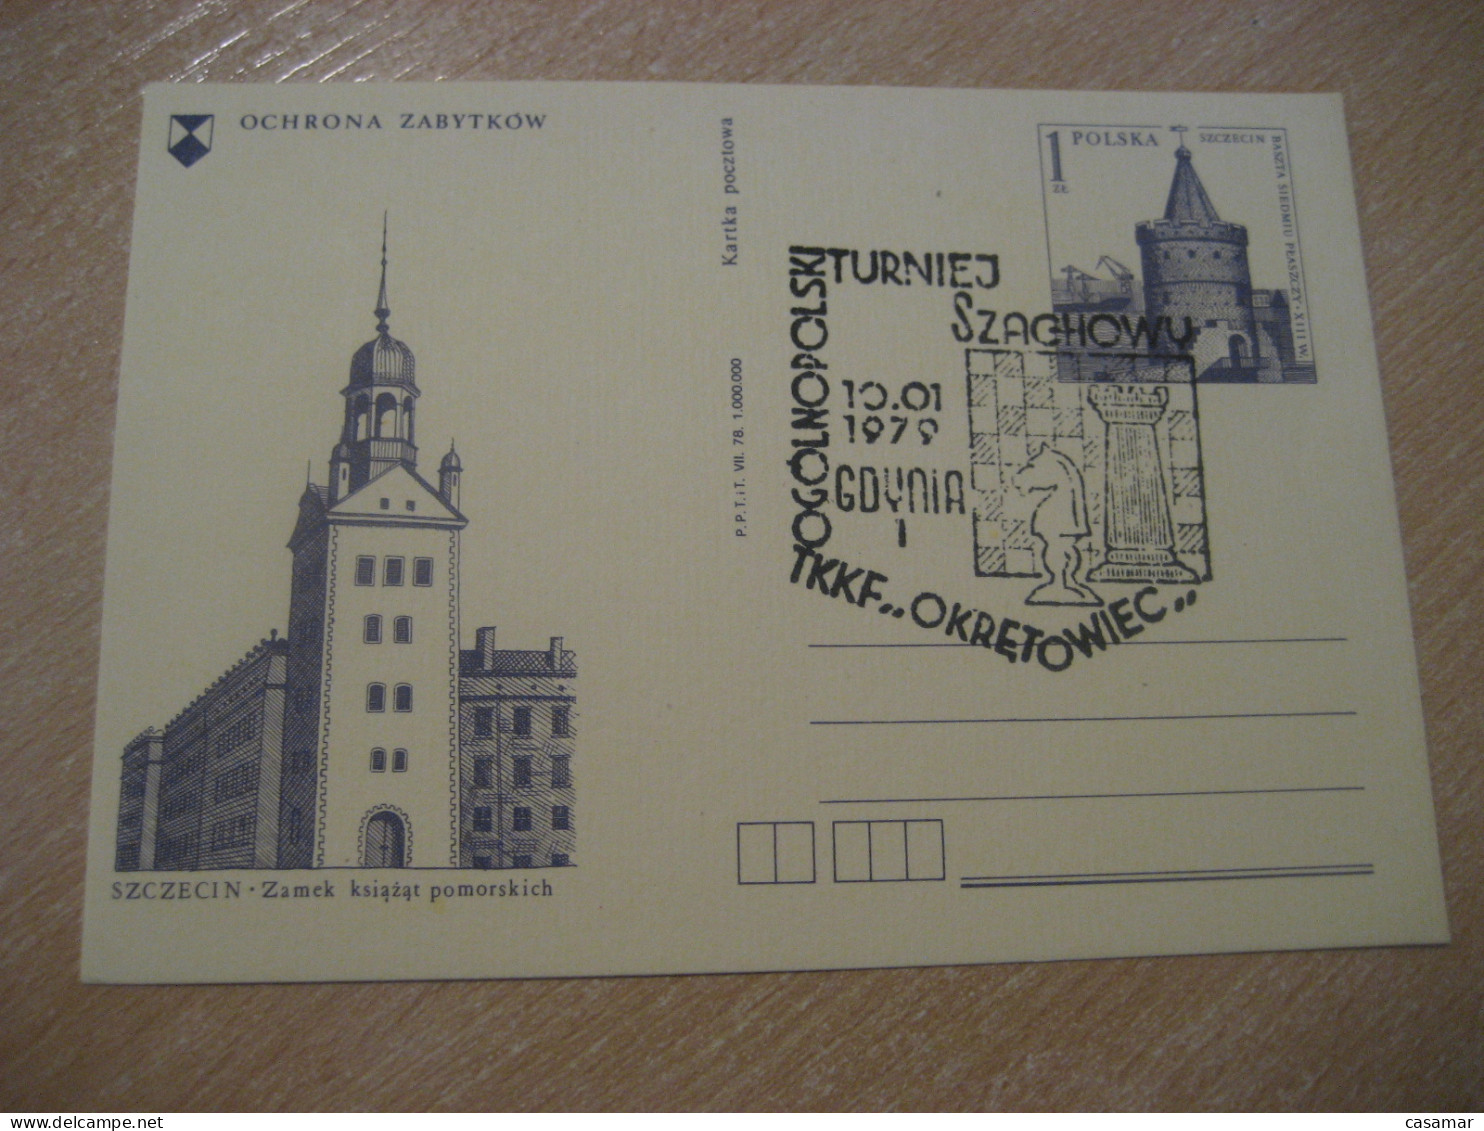 GDYNIA 1979 Chess Echecs Ajedrez Cancel Postal Stationery Card POLAND - Chess